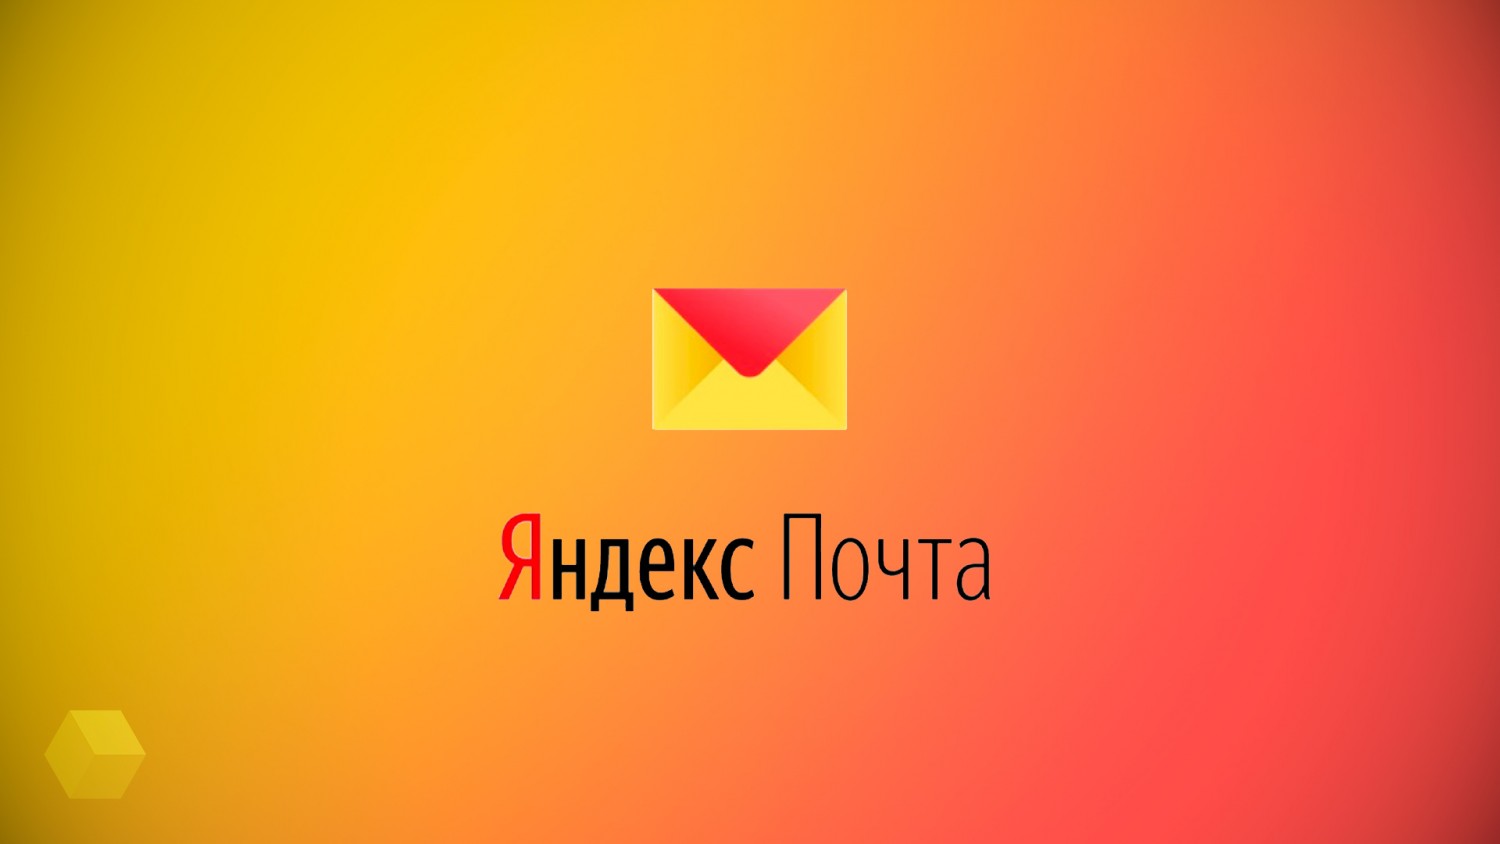 Яндекс почта логотип